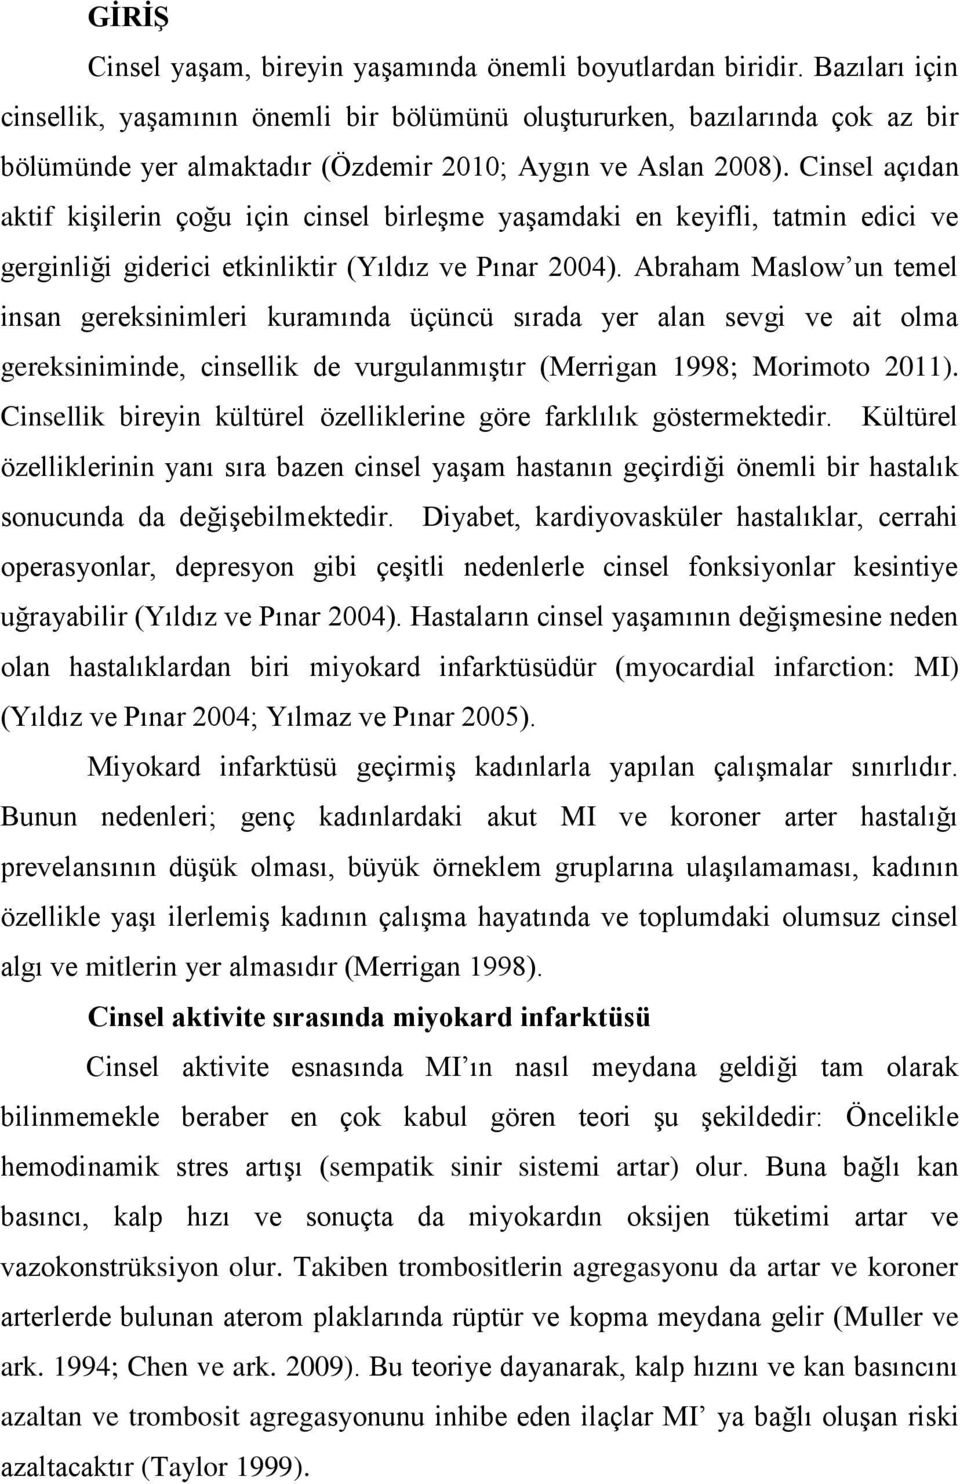 Cinsel açıdan aktif kişilerin çoğu için cinsel birleşme yaşamdaki en keyifli, tatmin edici ve gerginliği giderici etkinliktir (Yıldız ve Pınar 2004).